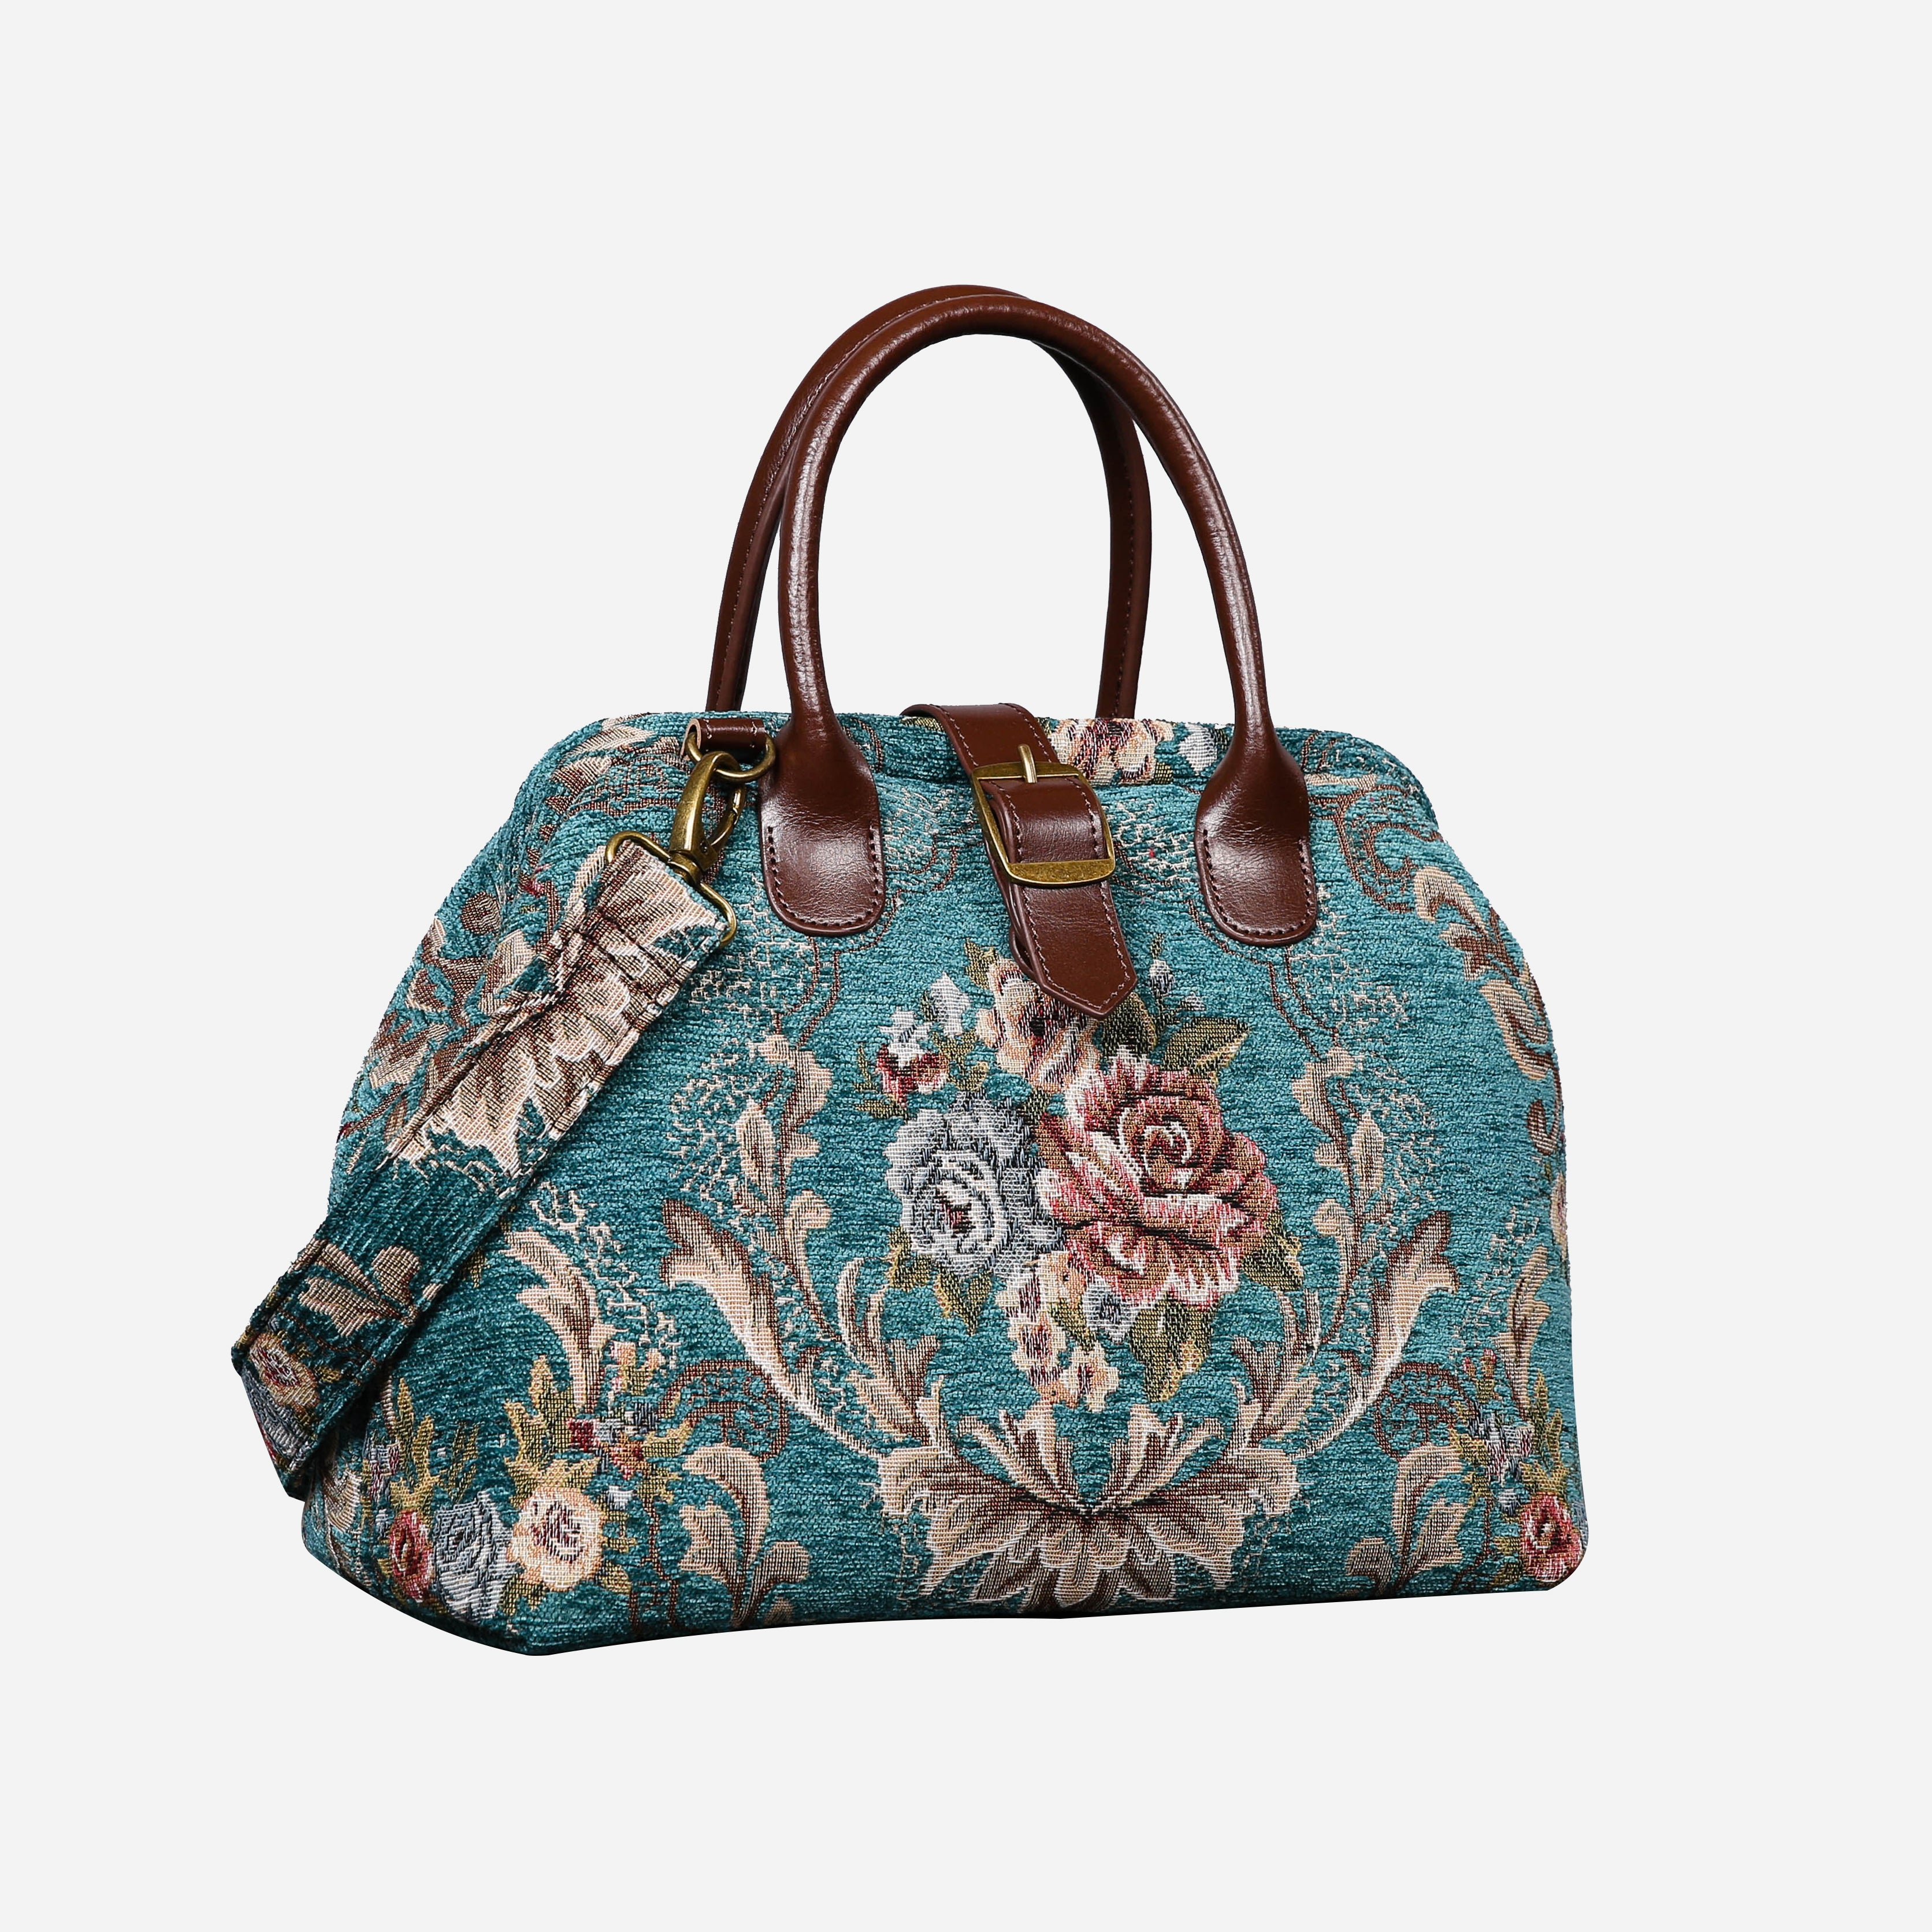 Floral Teal Carpet Handbag Purse carpet bag MCW Handmade-3